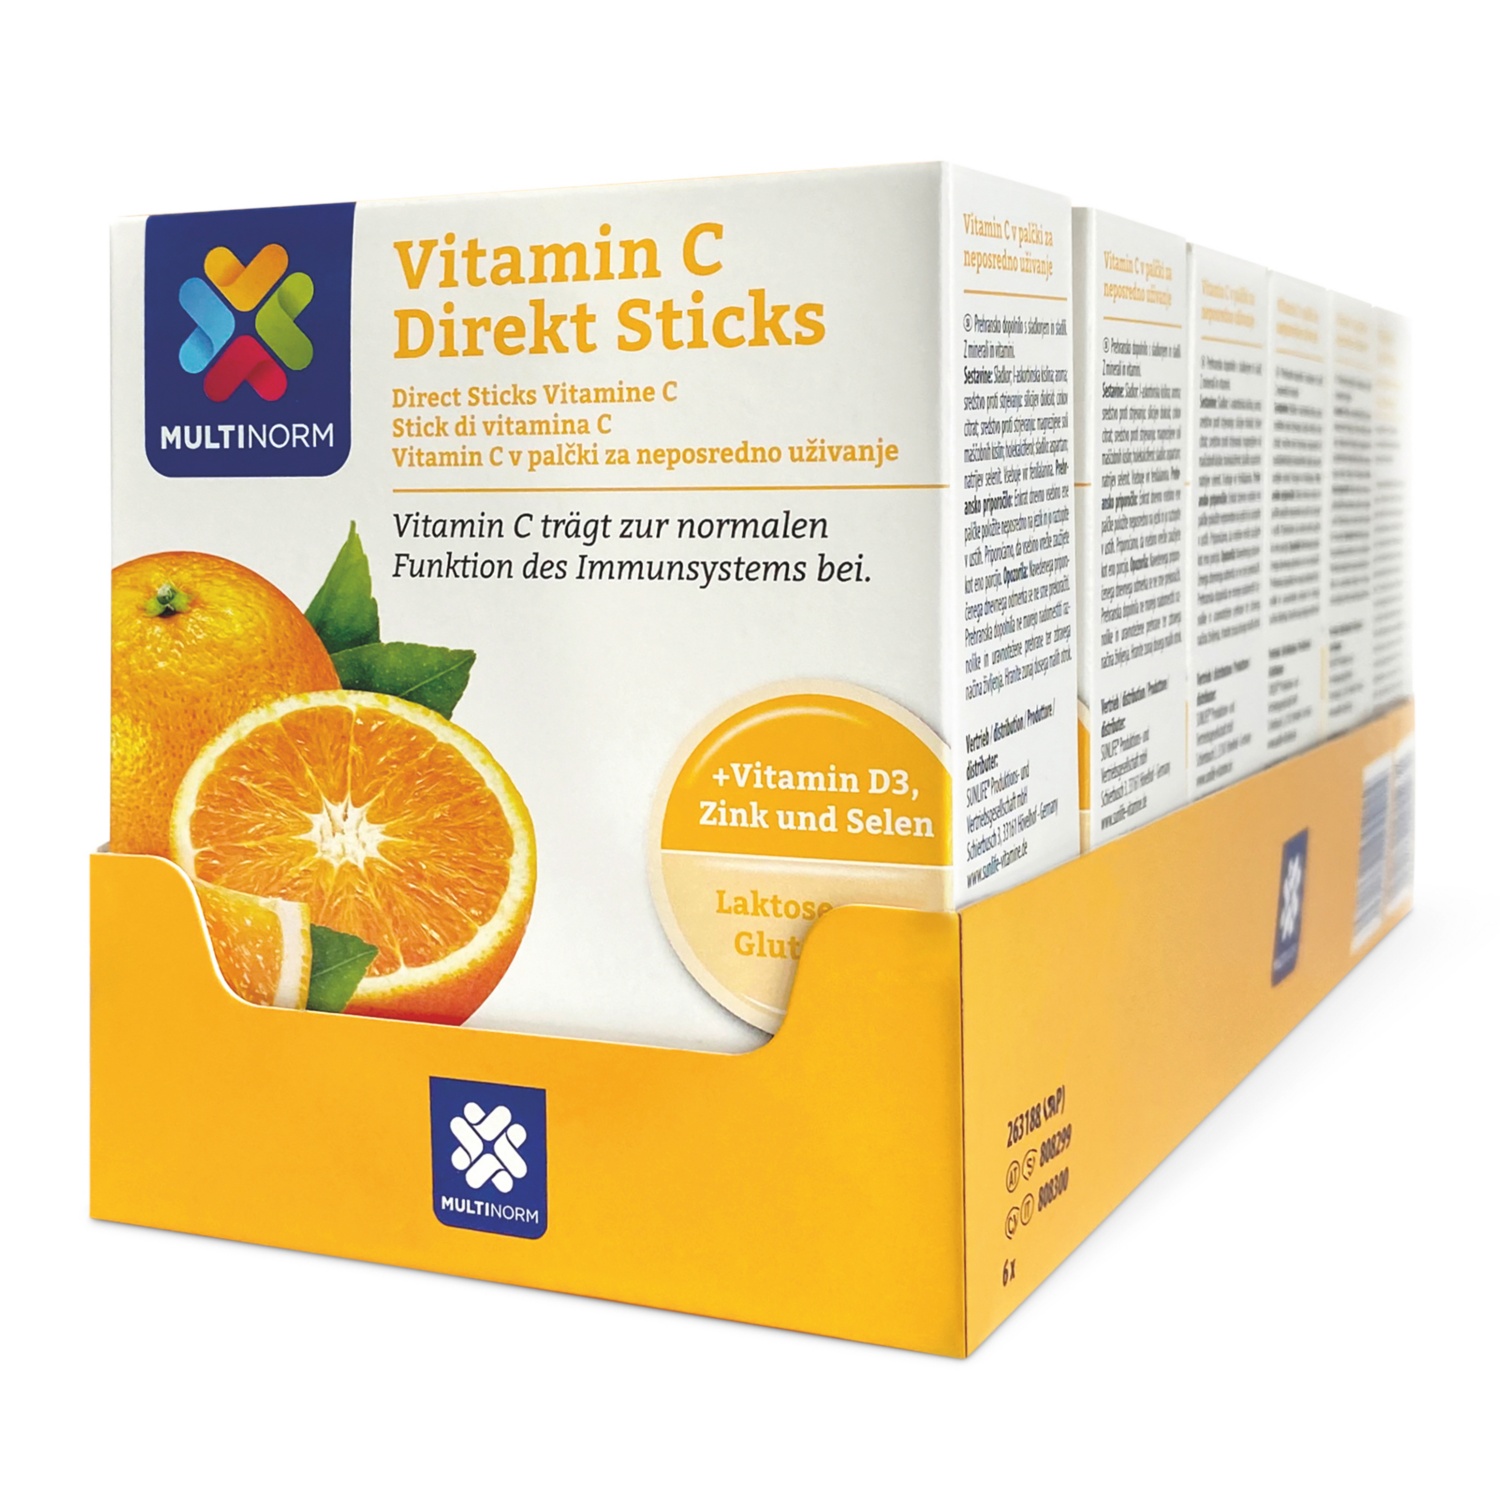 MULTINORM Vitamin C